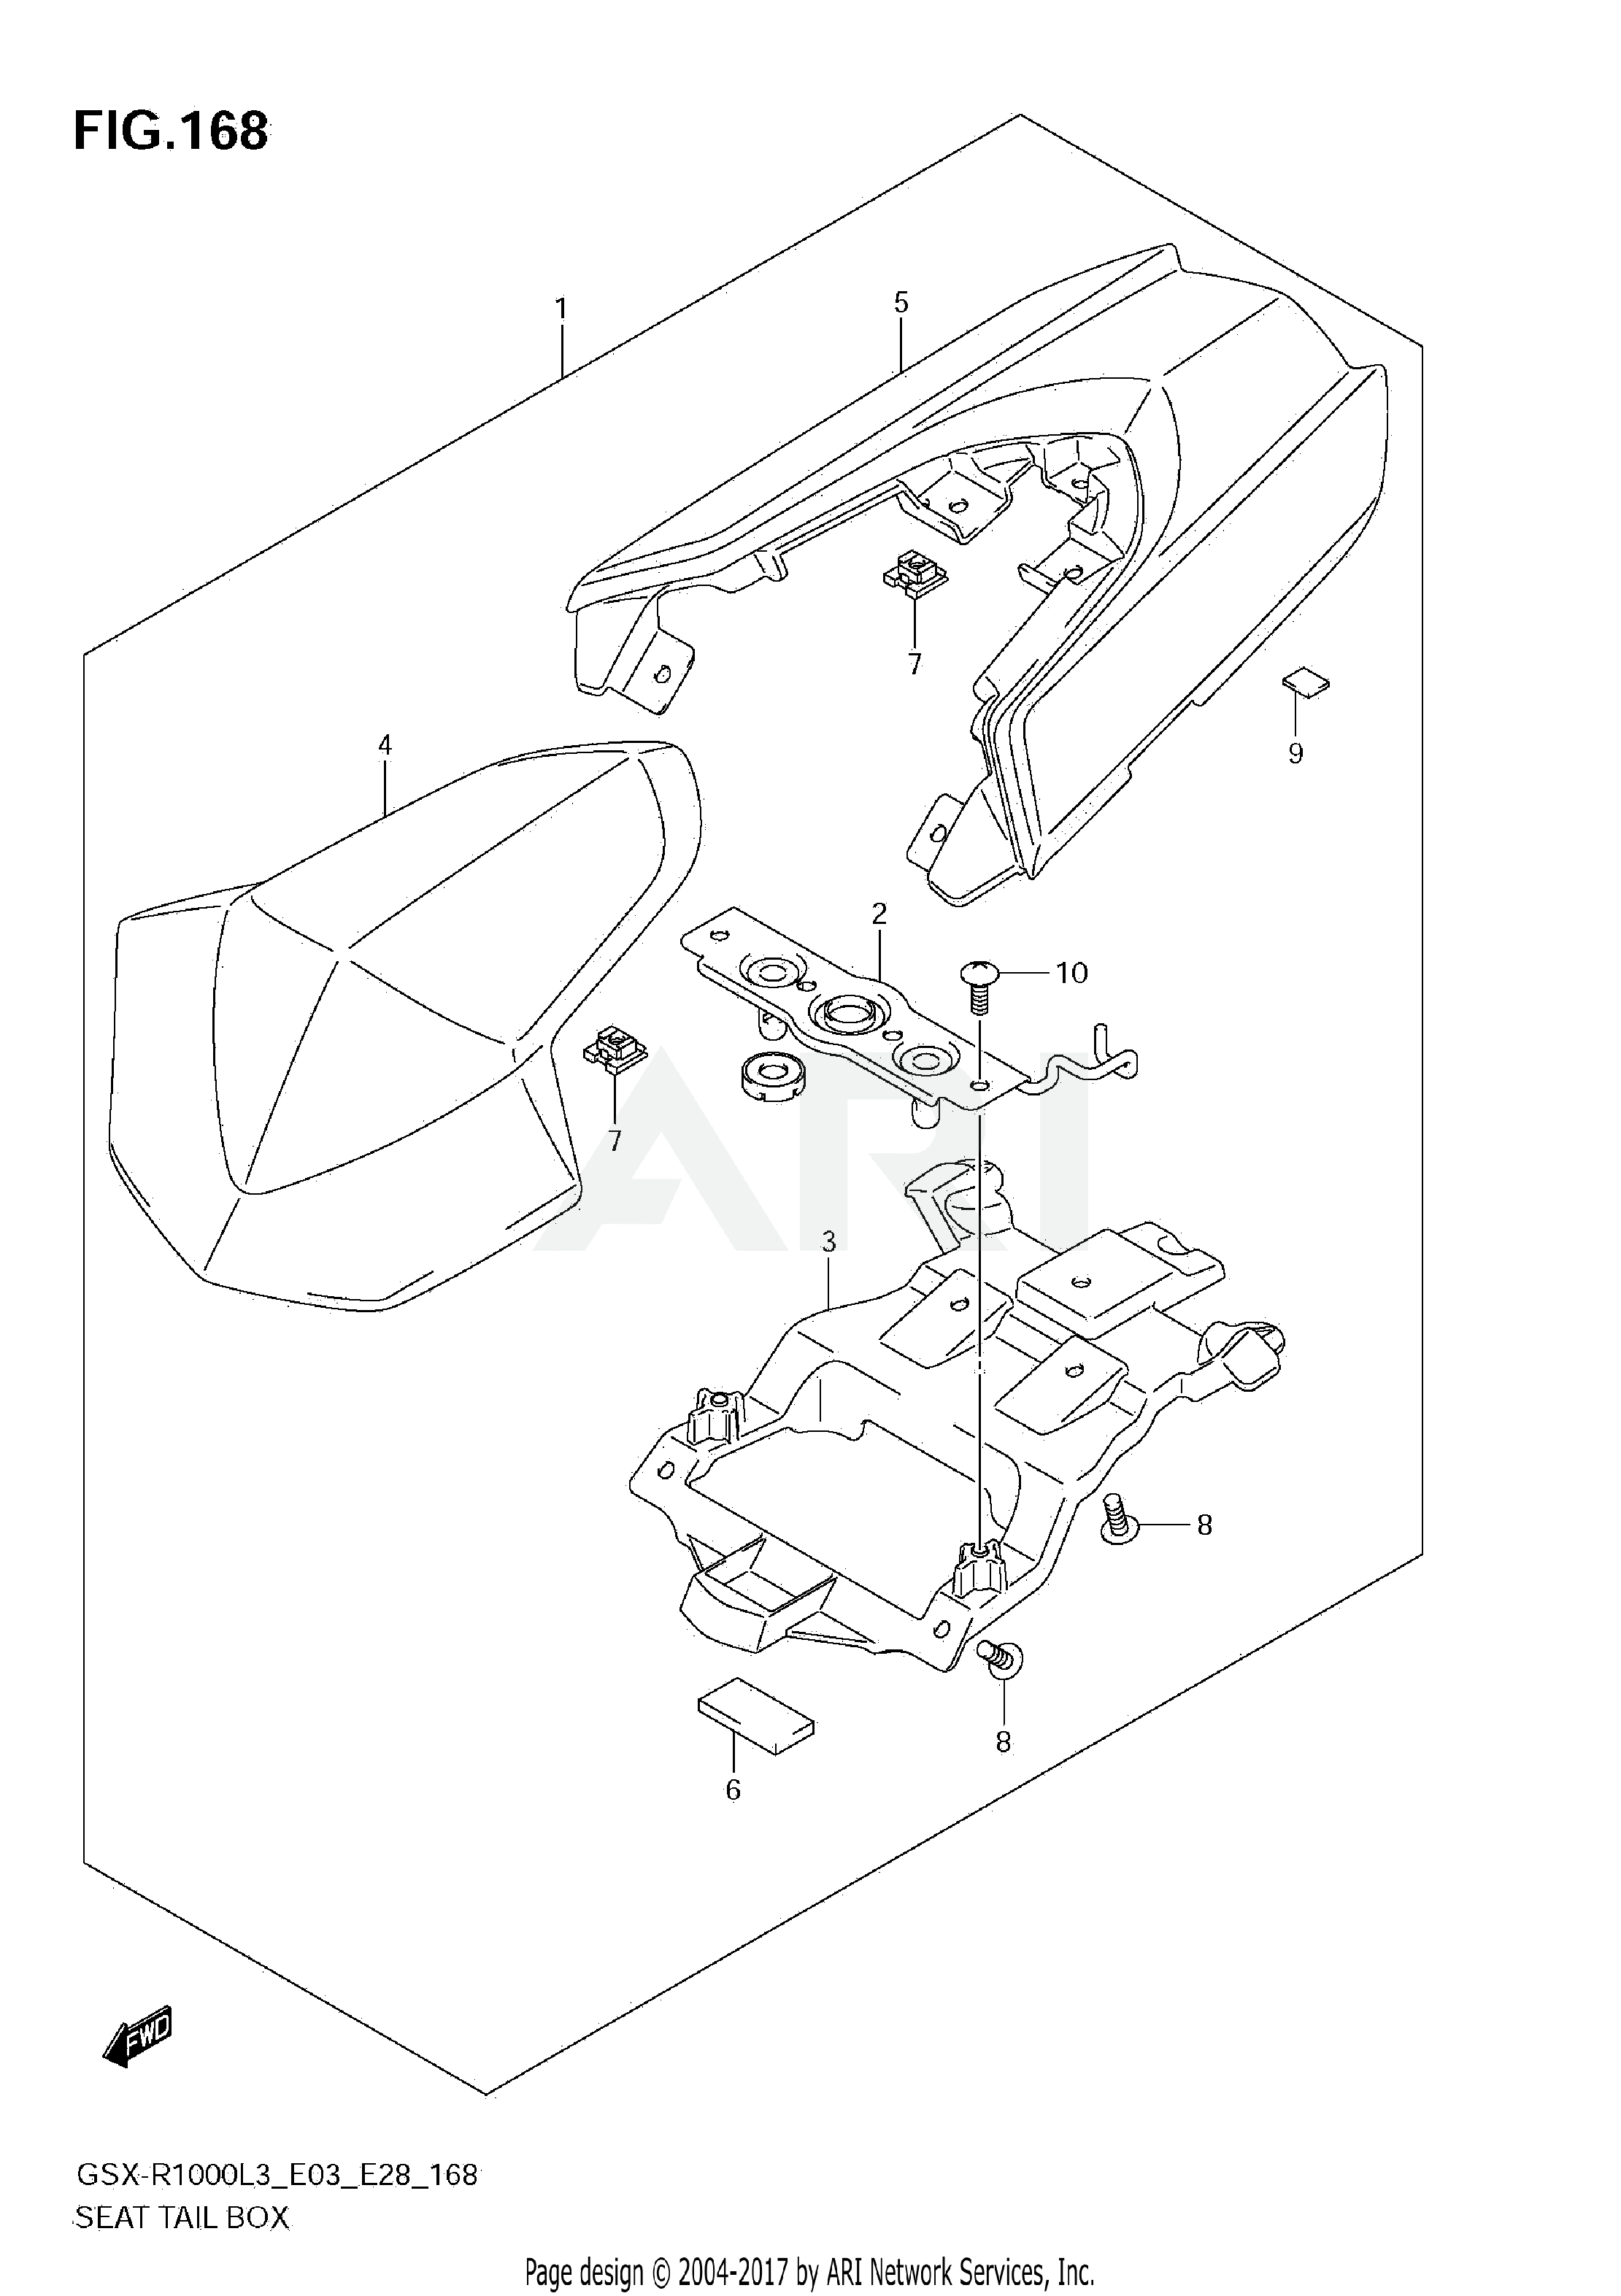 SEAT TAIL BOX (GSX-R1000ZL3 E03)